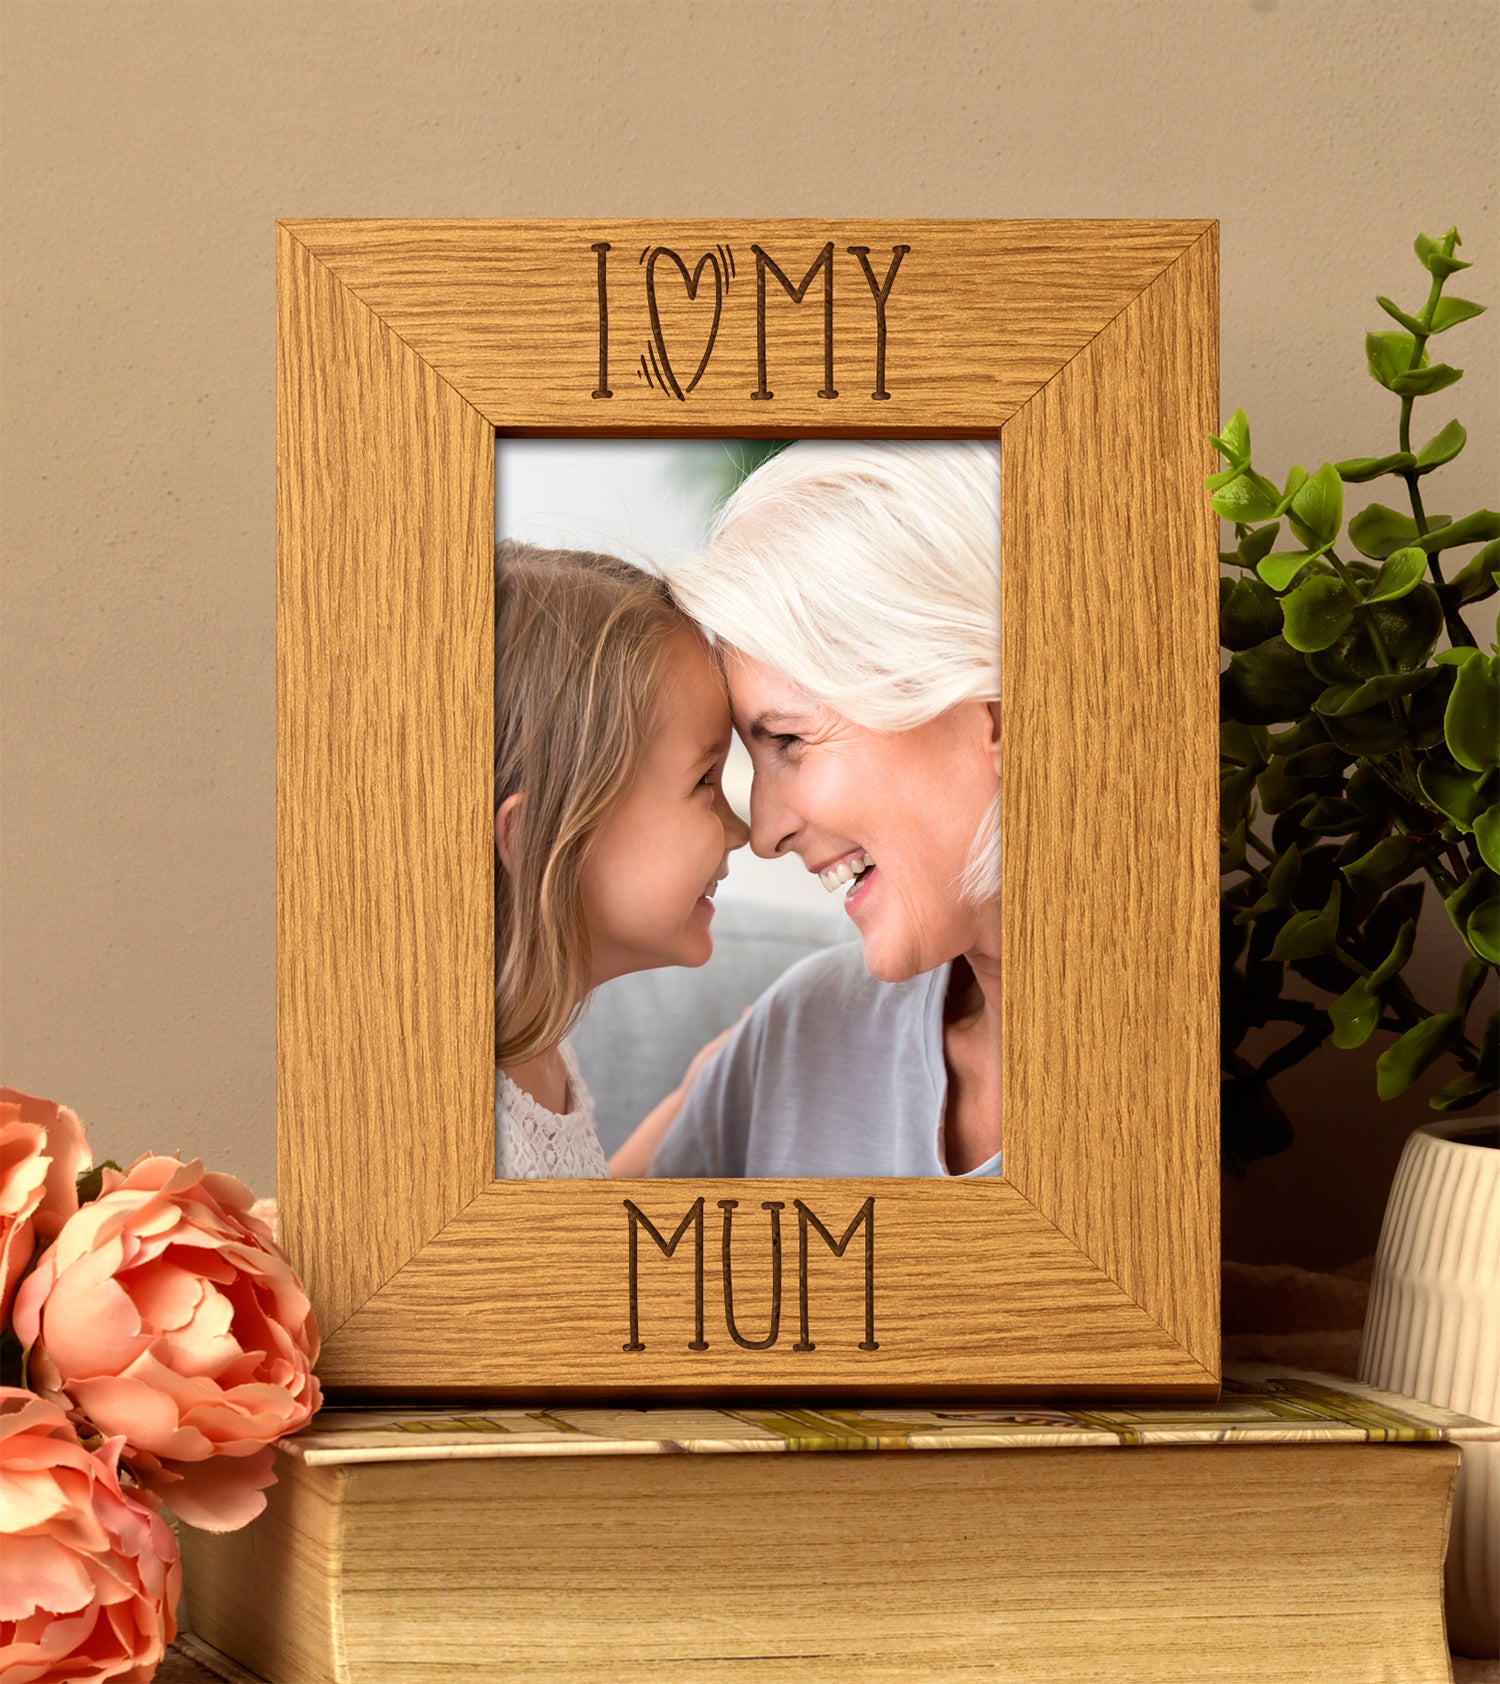 I love my Mum photo frame - ukgiftstoreonline